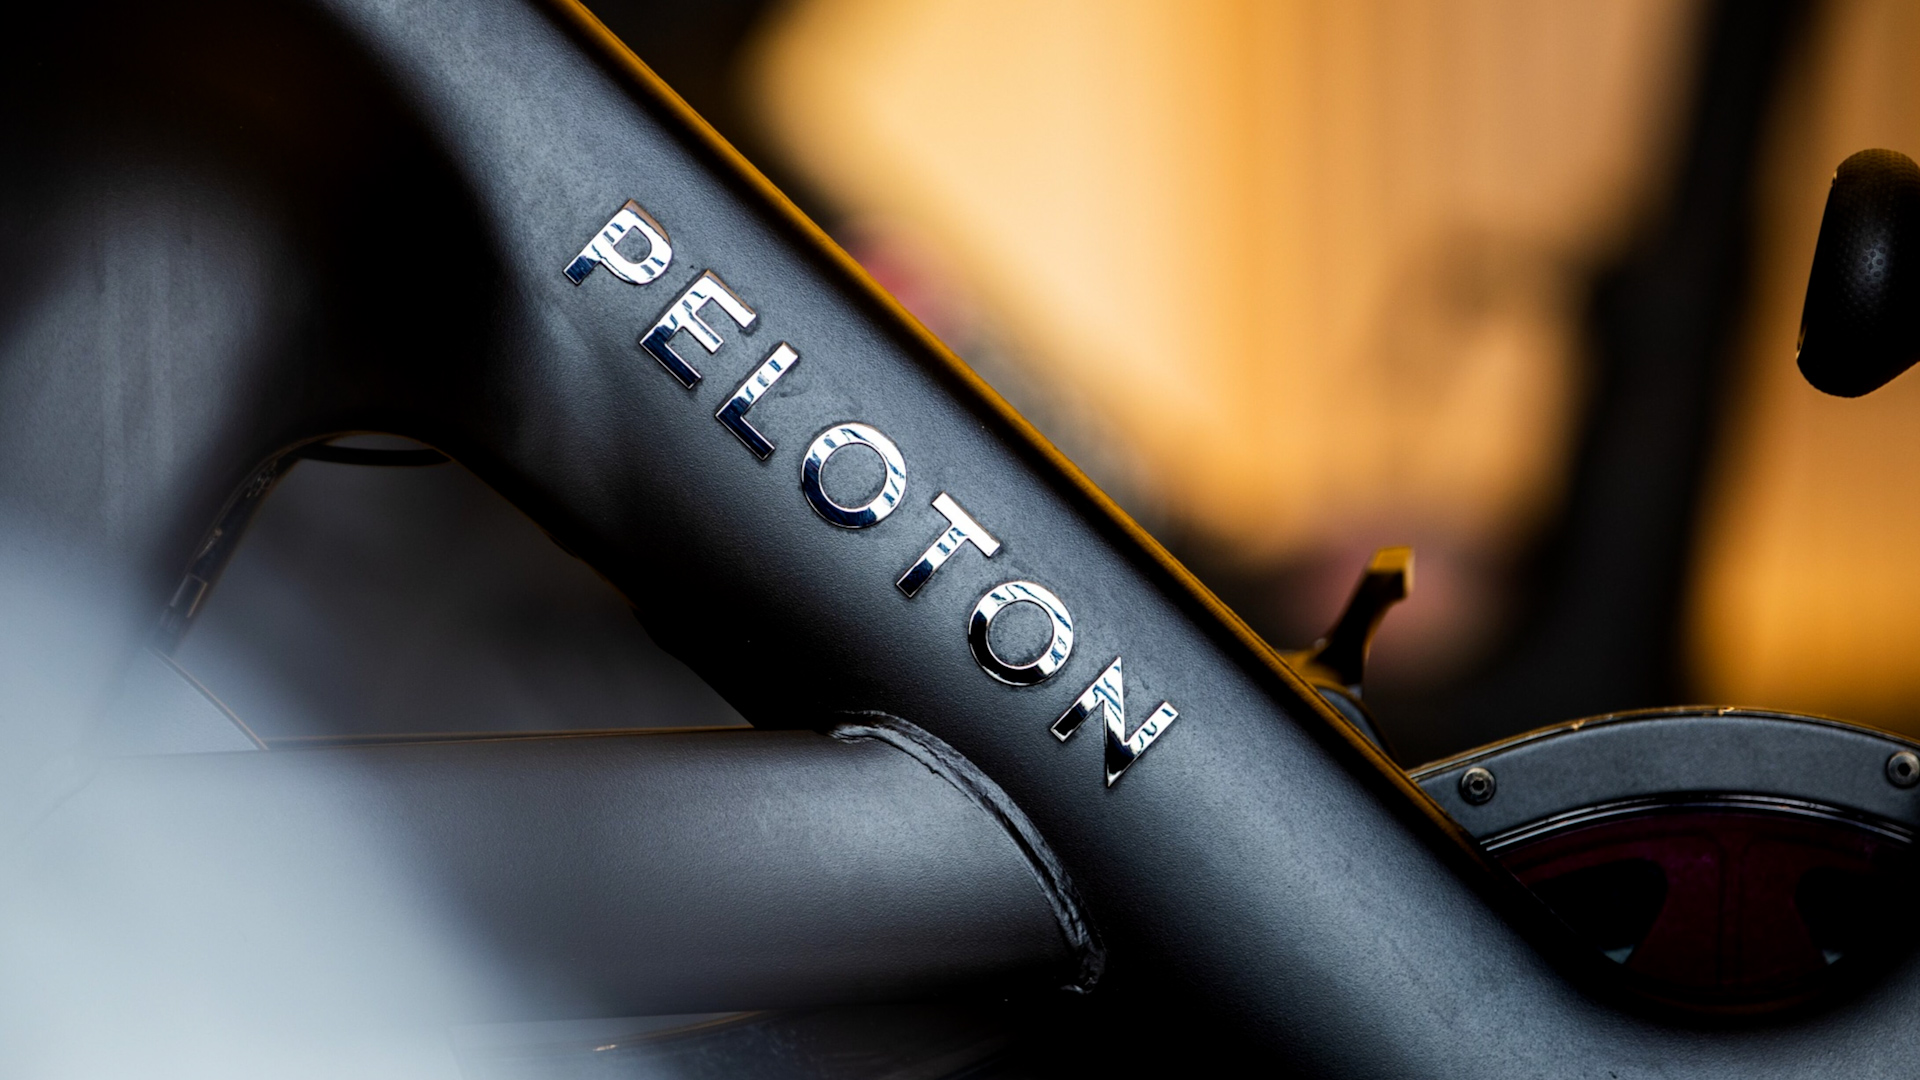 Peloton Recalls 2 Million Exercise Bikes Due to Risk of Fall & Injury